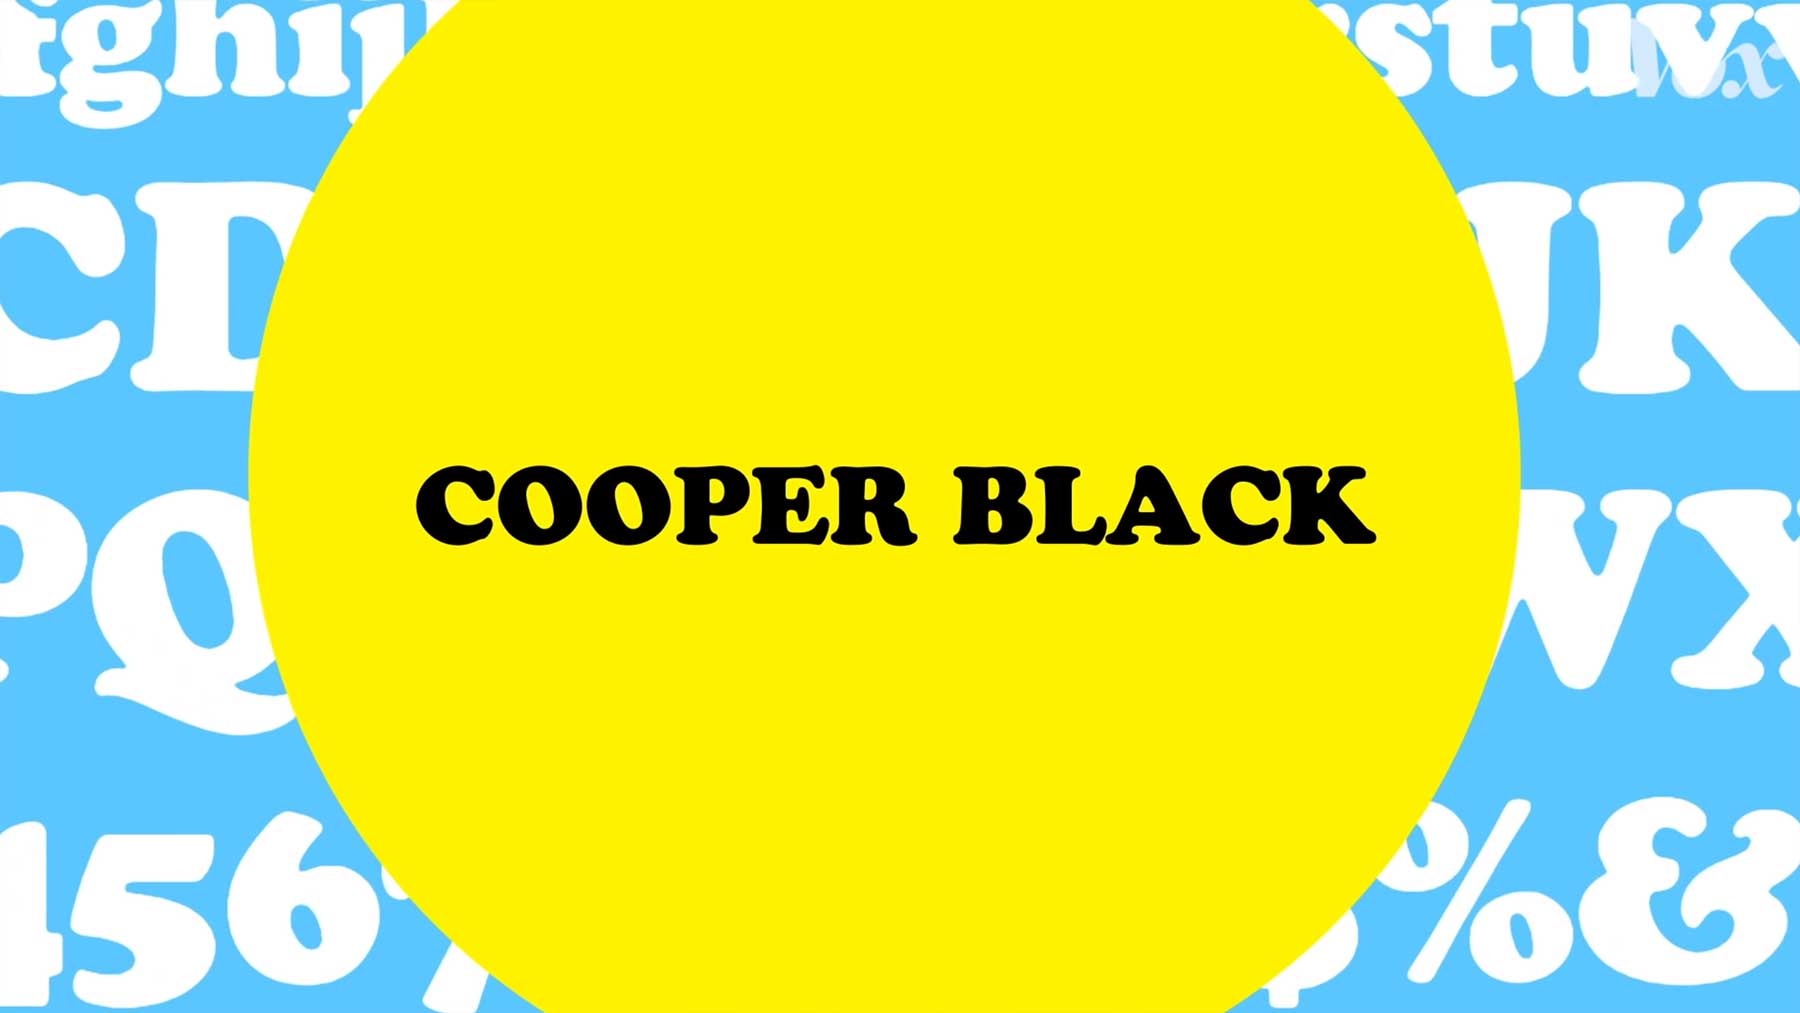 Wieso die Schriftart "Cooper Black" überall zu sehen ist cooper-black-font-ueberall 